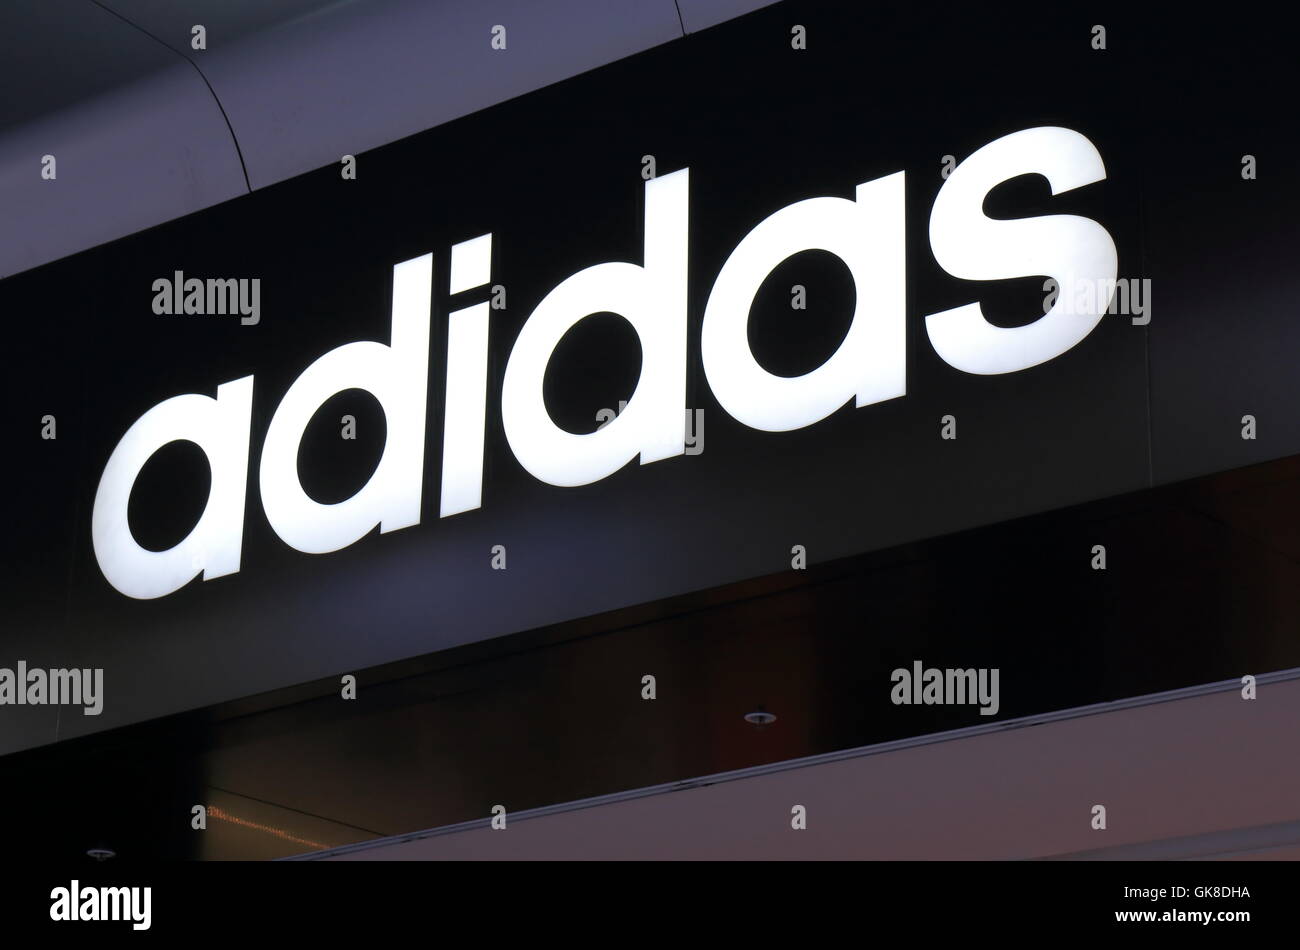 Logo von Adidas, Deutsche multinationale Unternehmen, das entwickelt und fertigt Sportbekleidung und Accessoires. Stockfoto